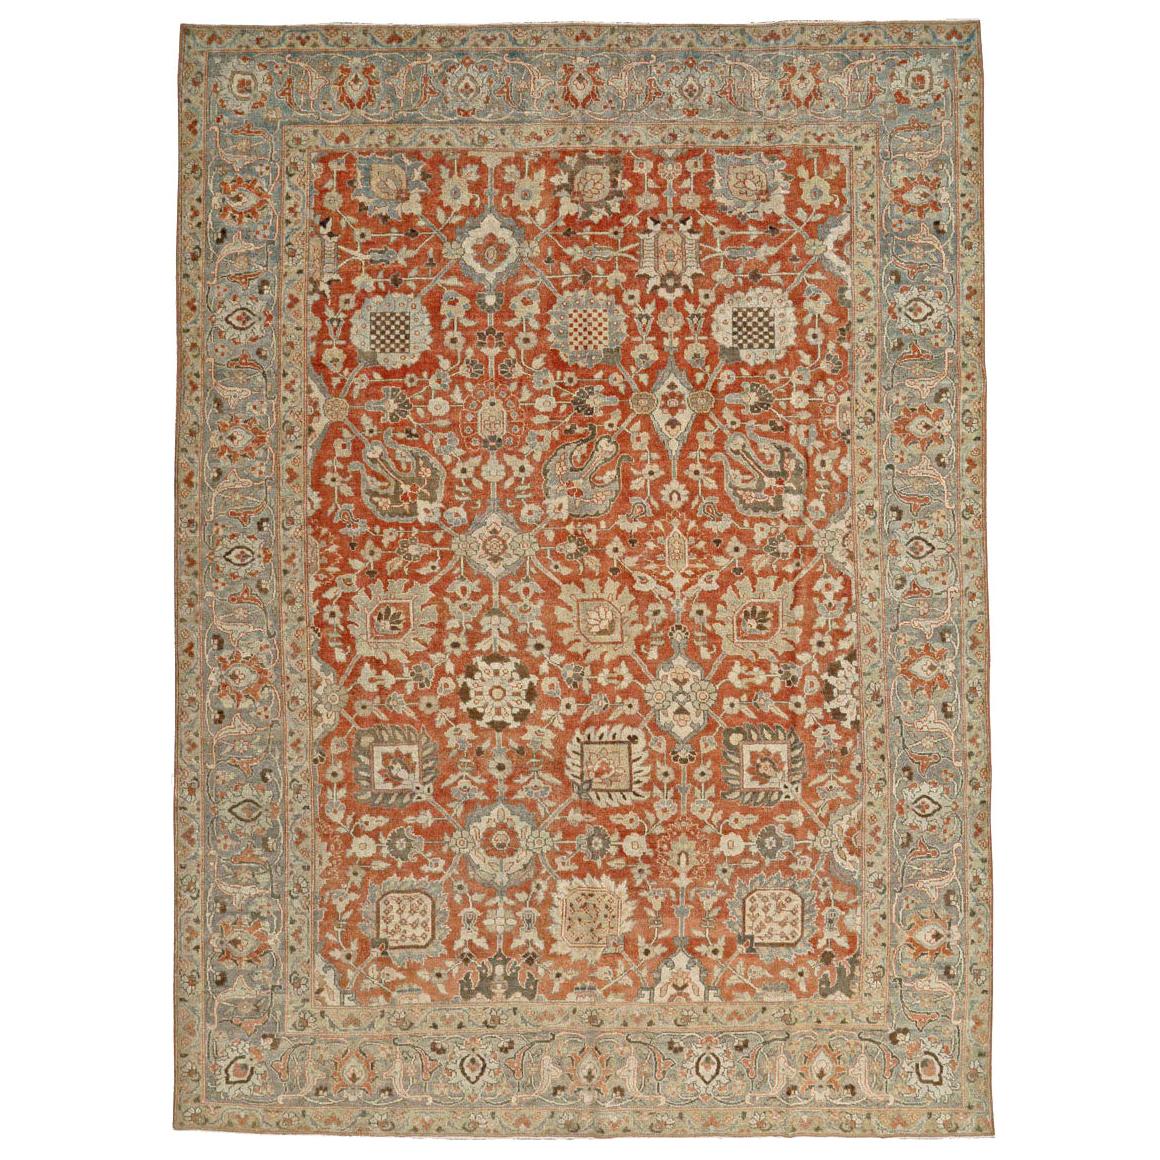 Handgefertigter persischer Täbris-Teppich in Zimmergröße aus dem frühen 20. Jahrhundert in Rost und Grau